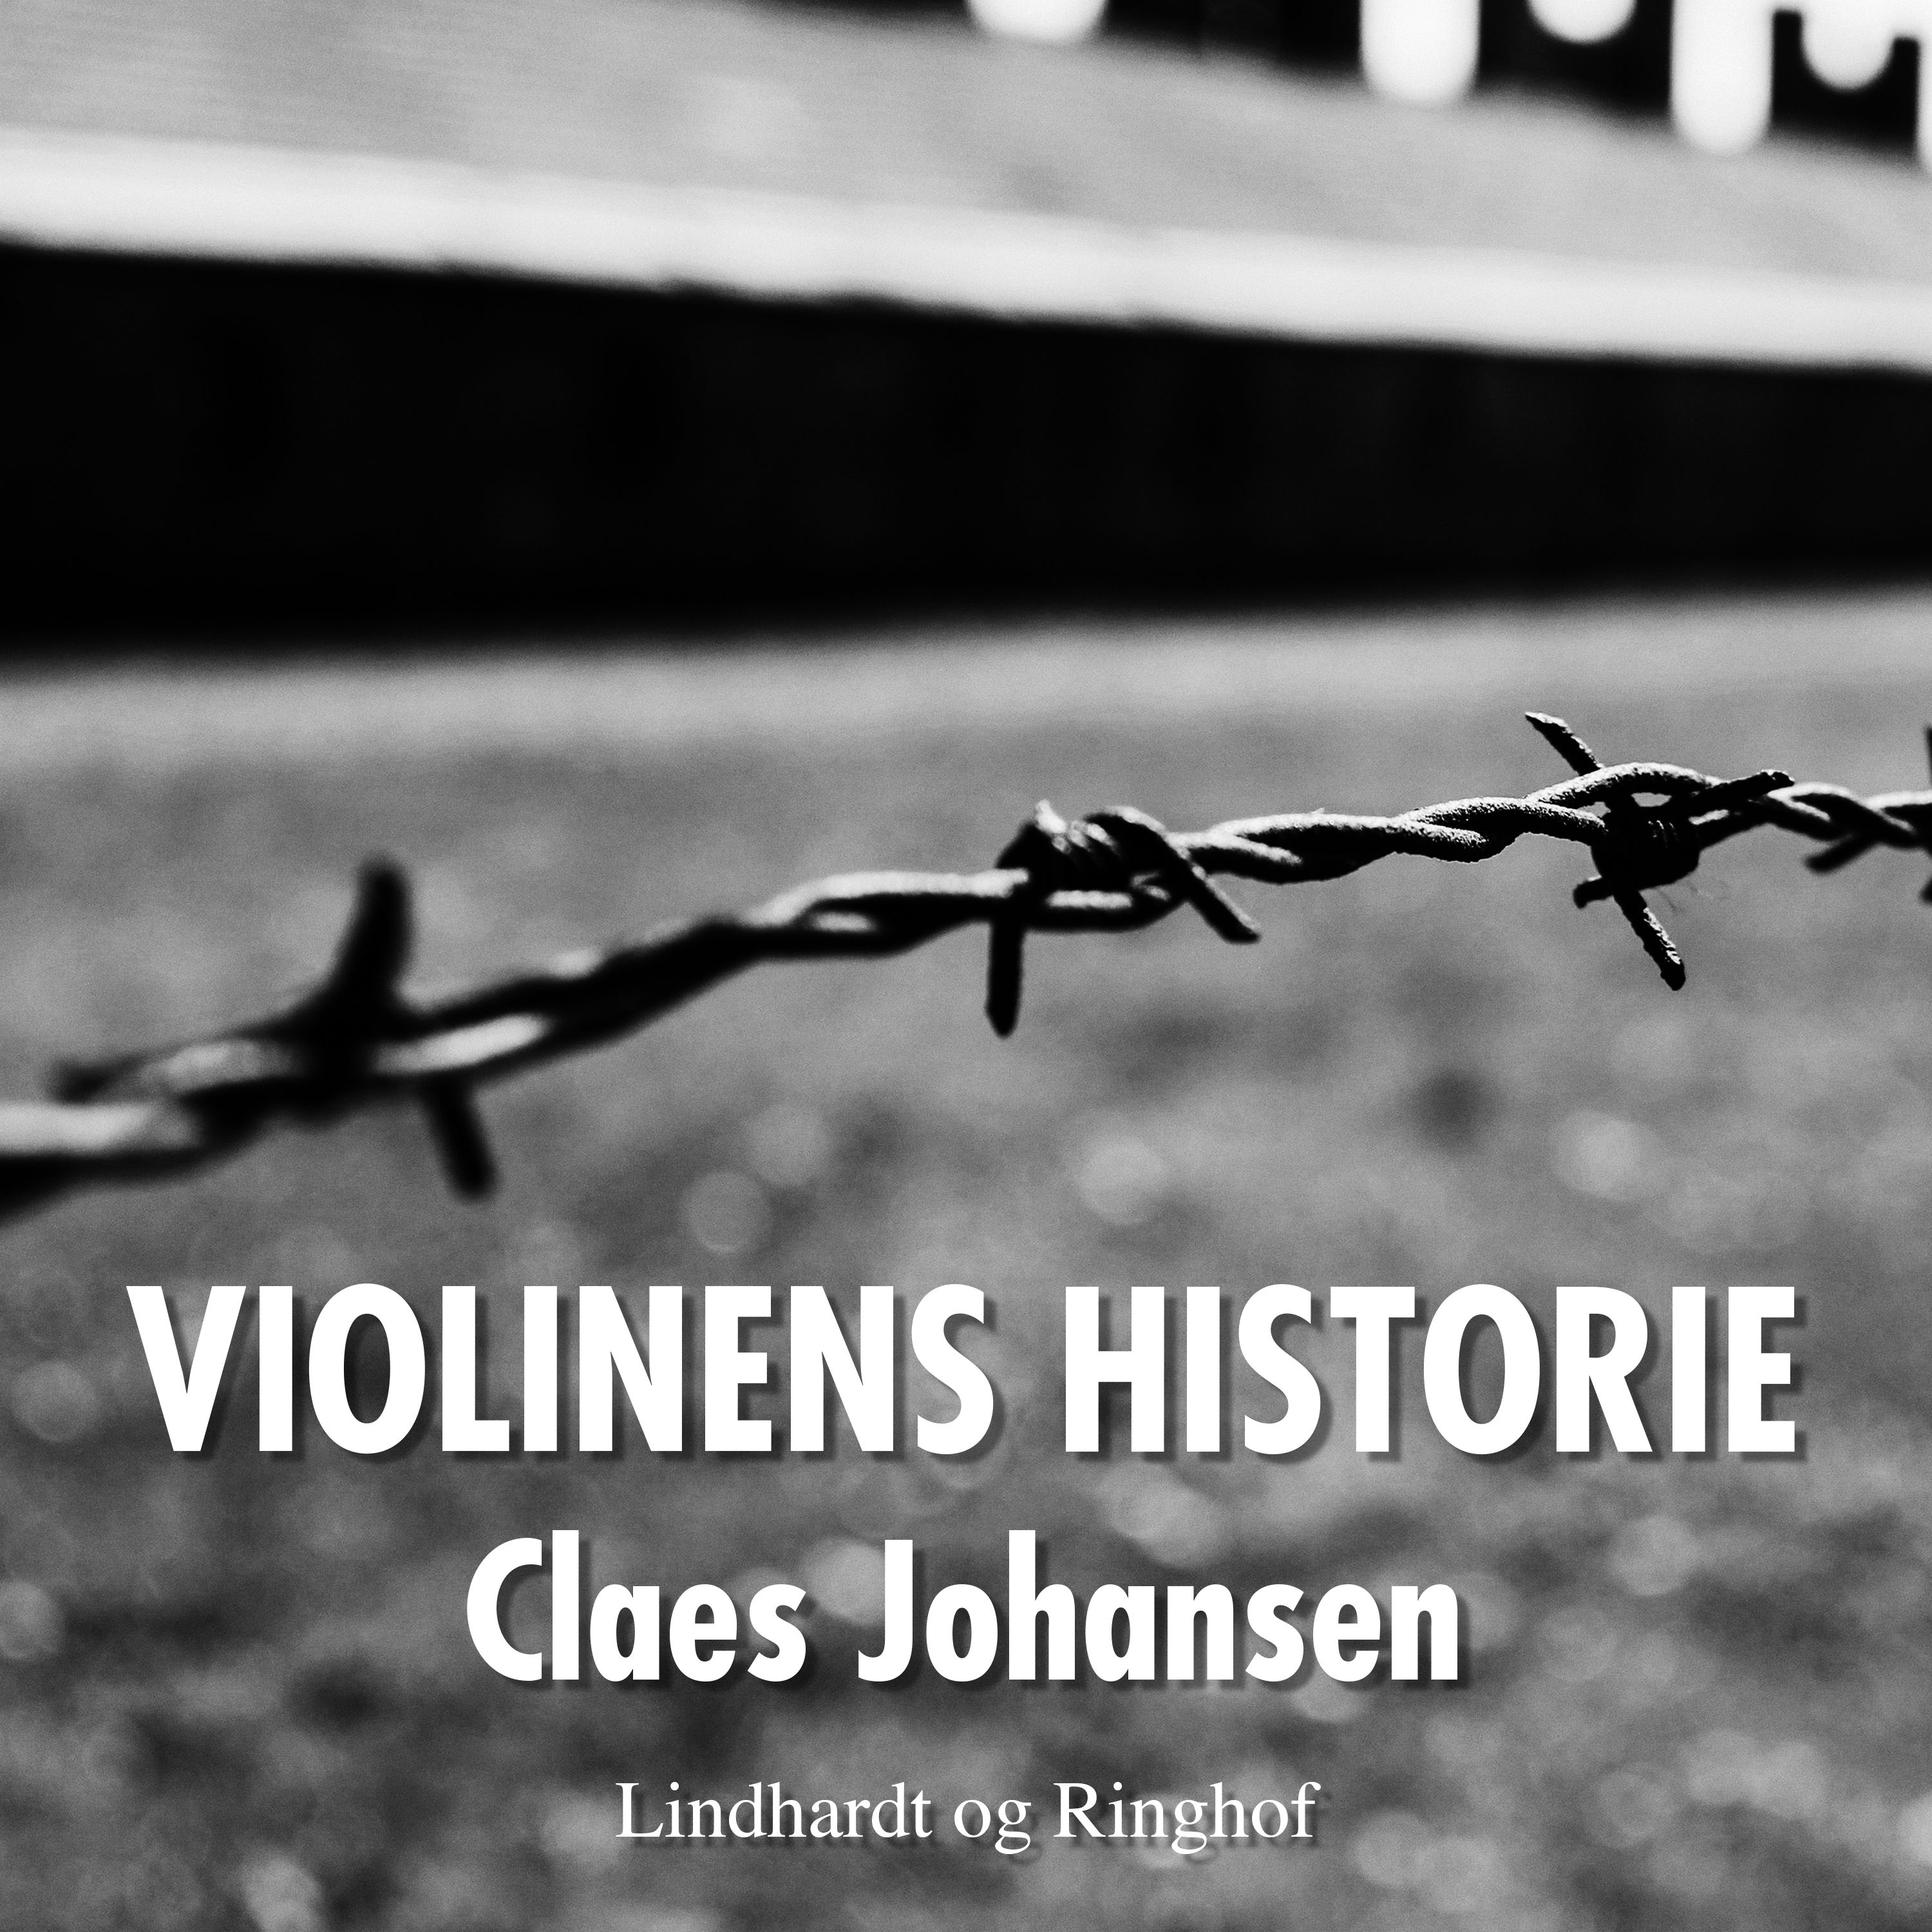 Violinens historie, ljudbok av Claes Johansen